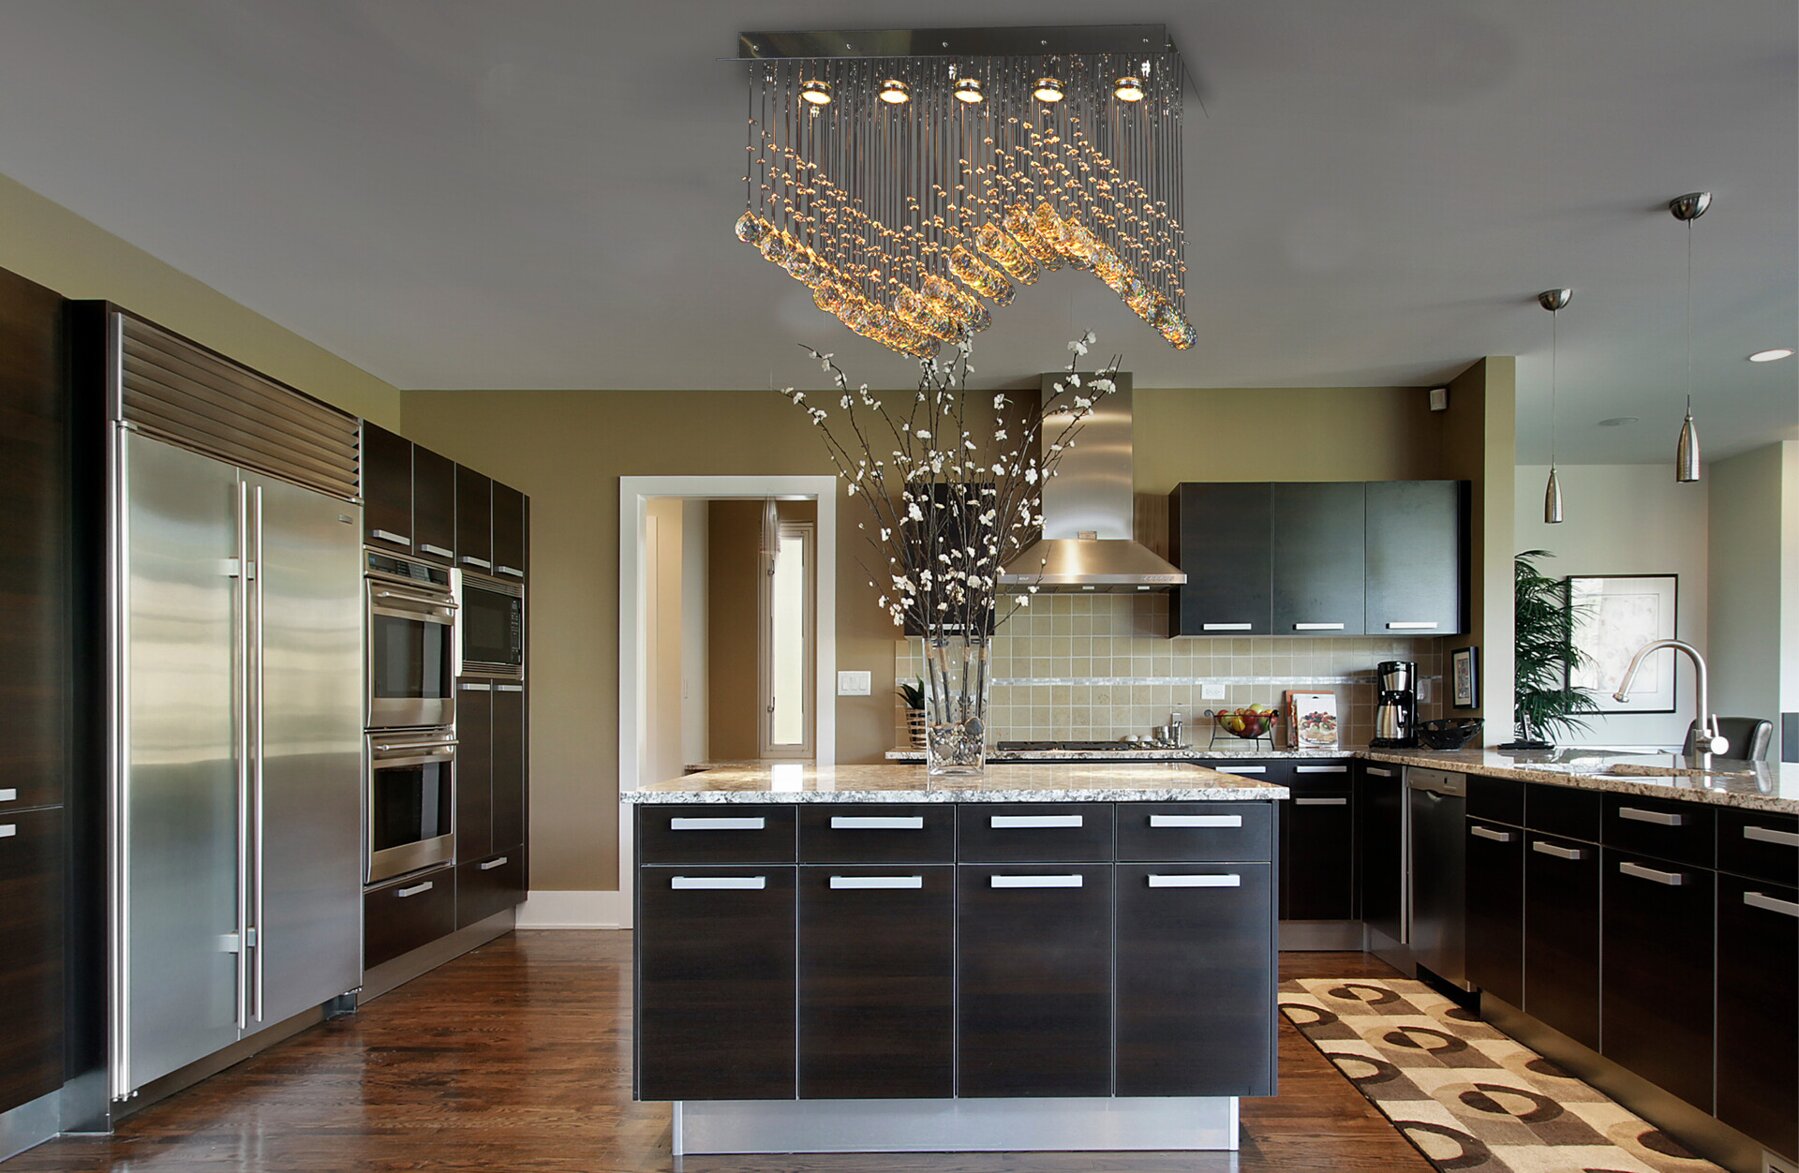 Kitchen modern ceiling light in modern style ATX1404777